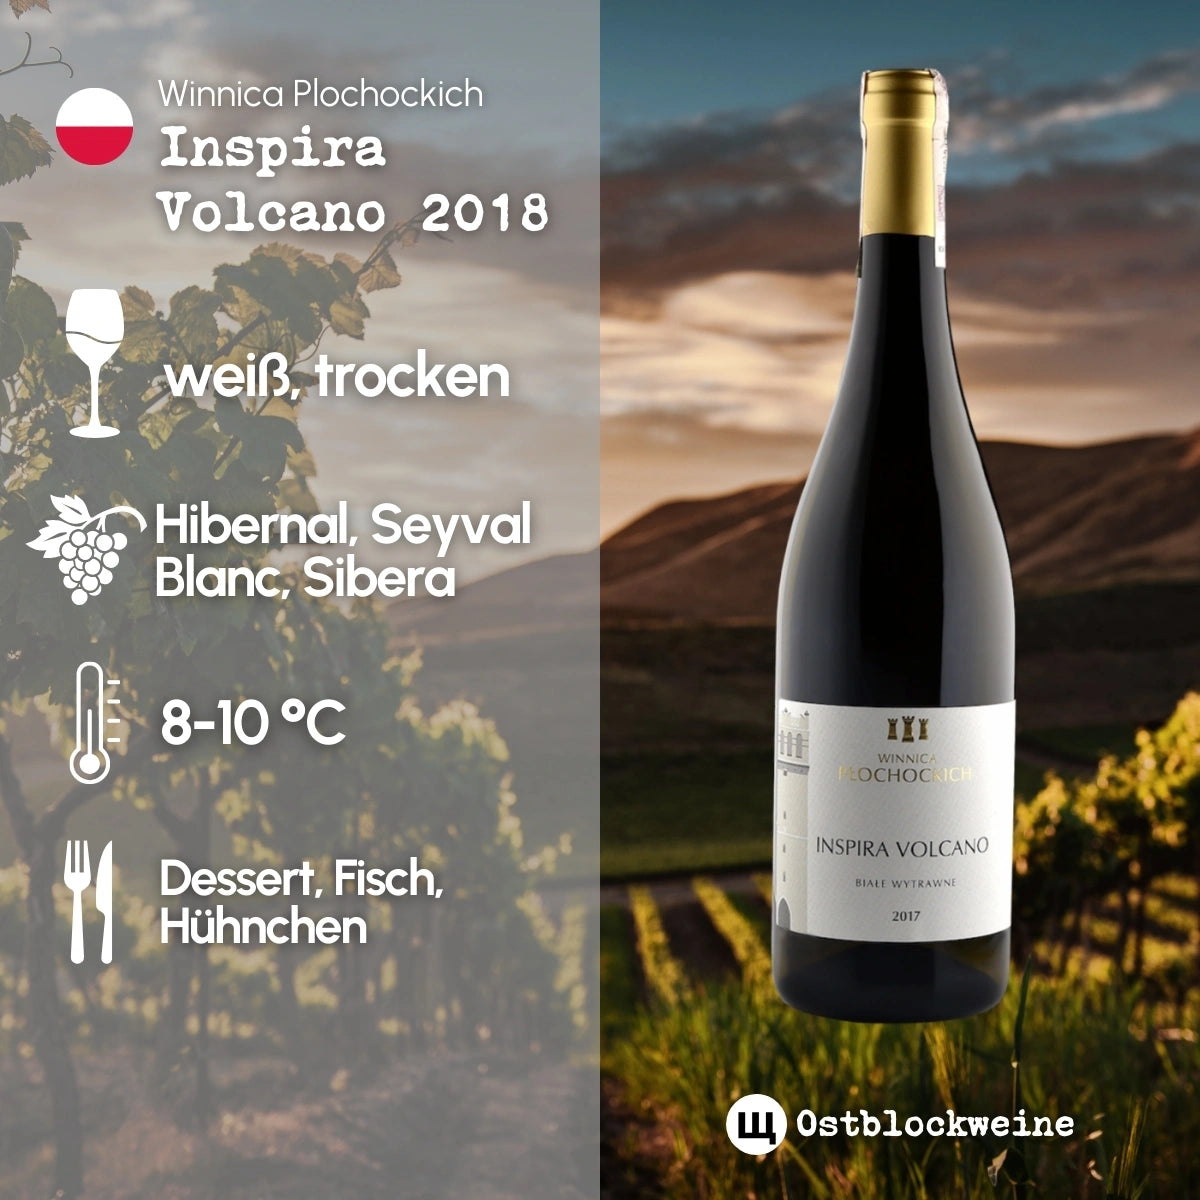 Inspira Volcano 2018 - Weißwein trocken aus Polen - Winnica Plochockich - ostblockweine